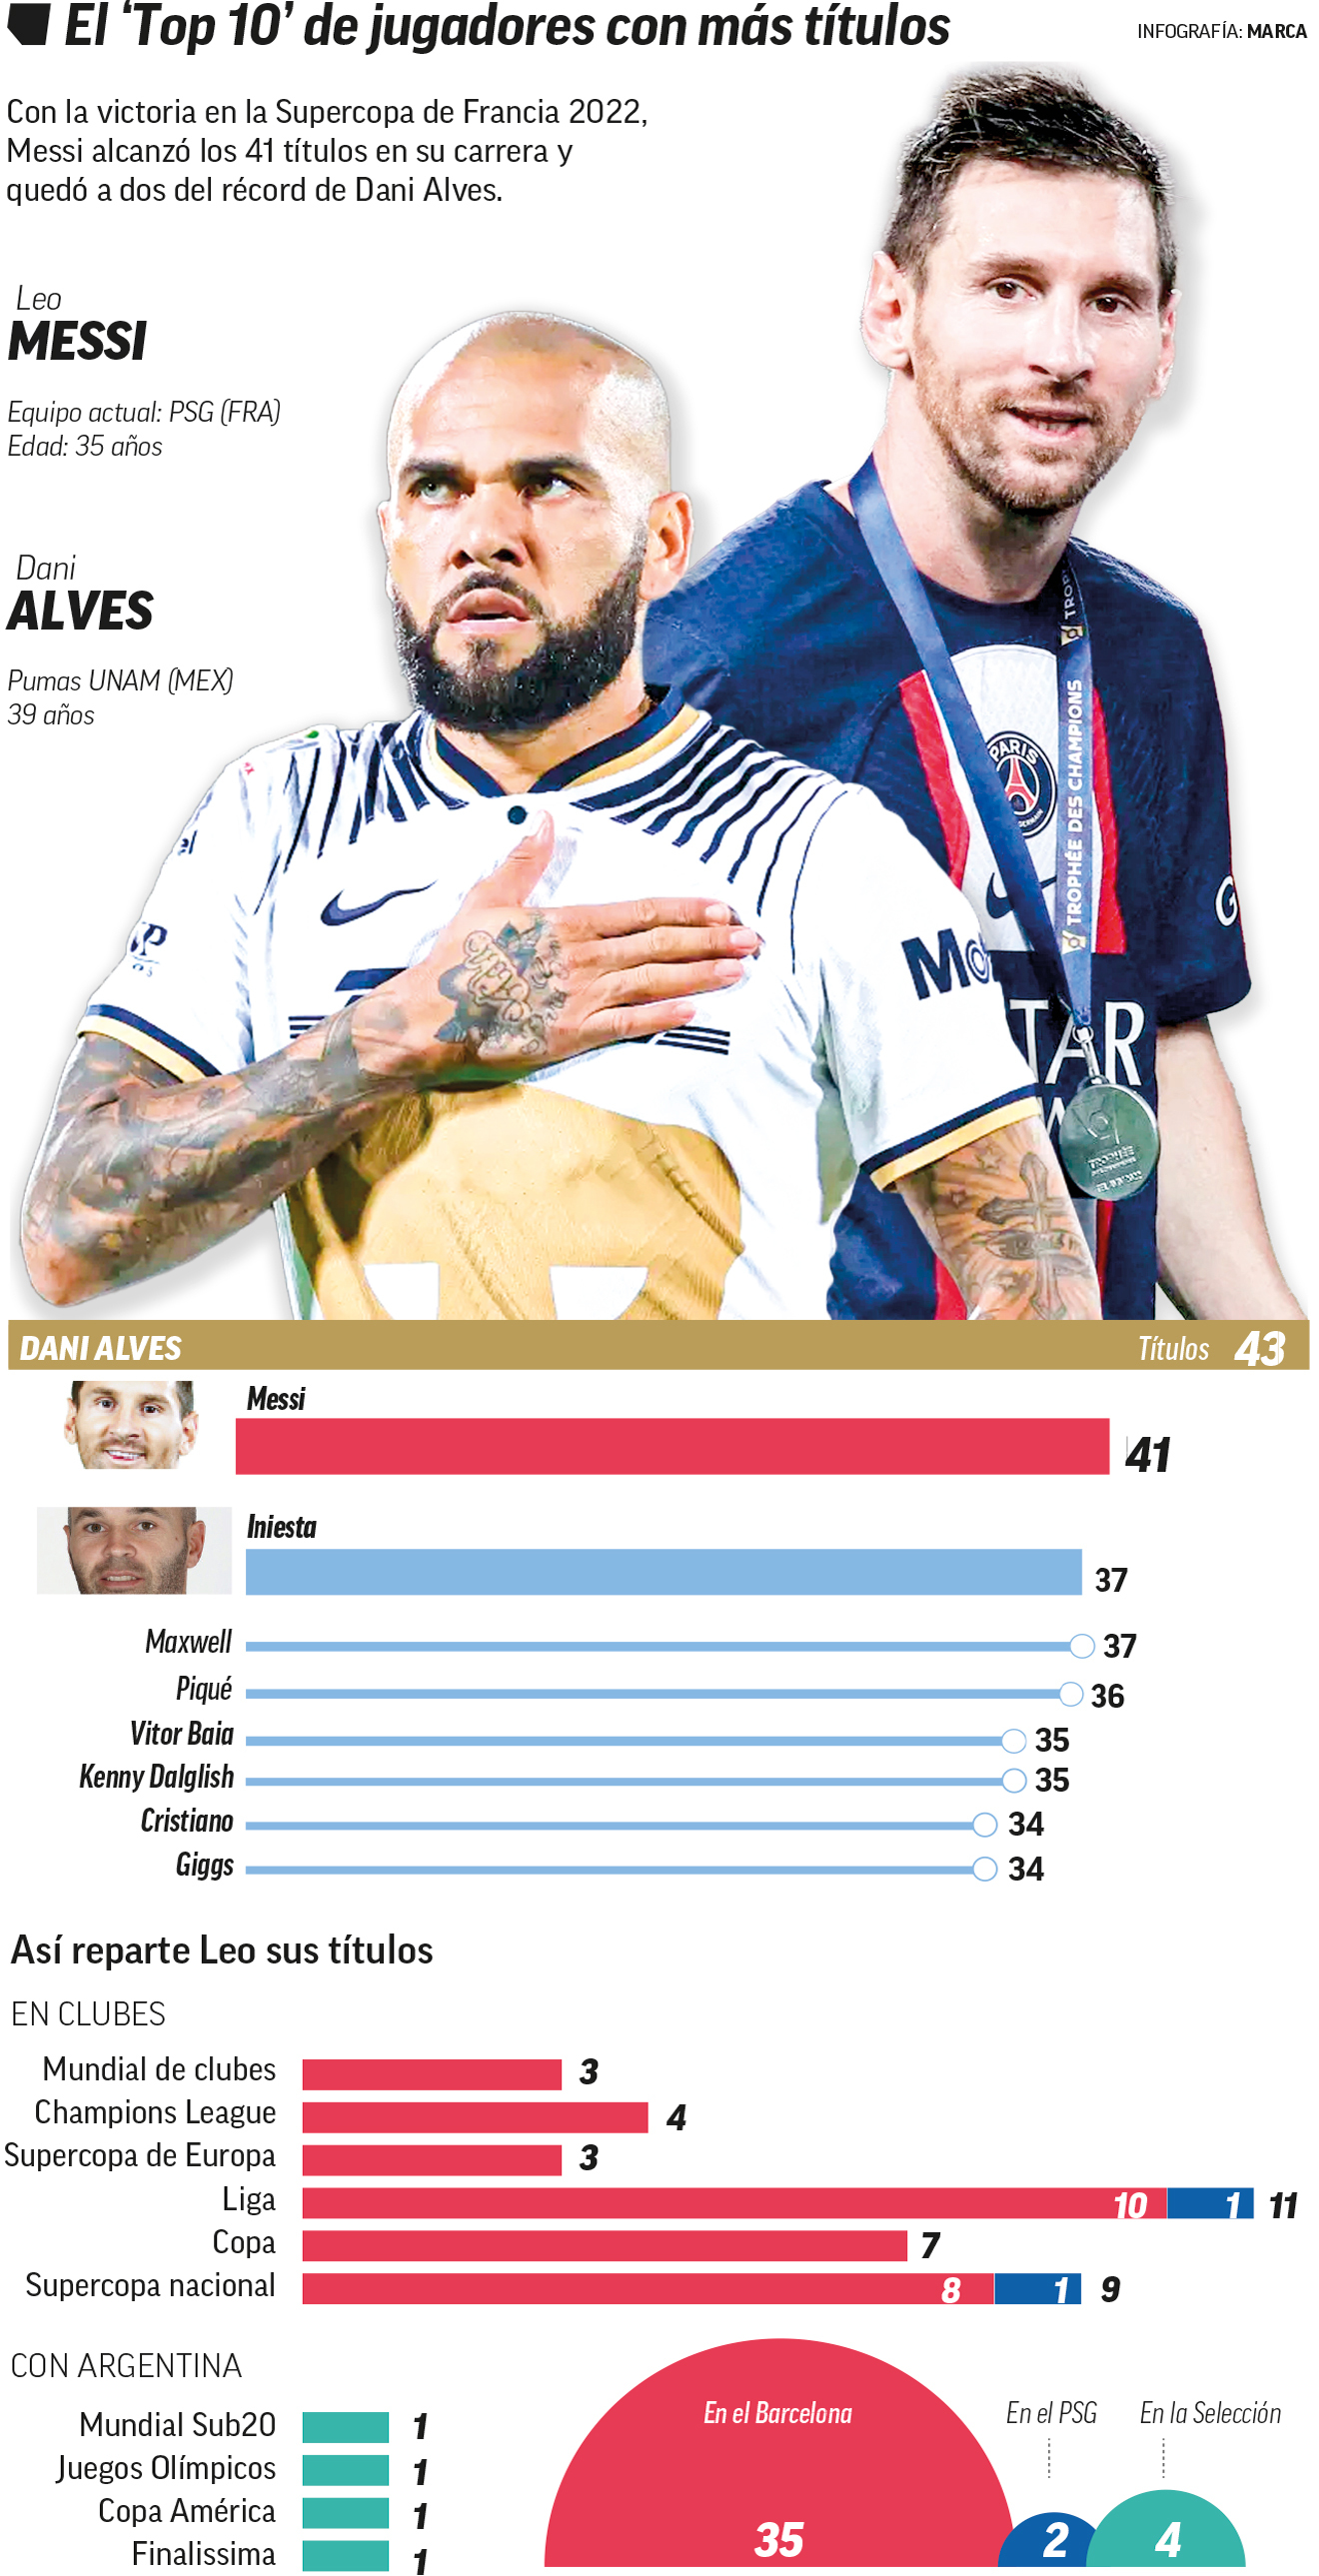 Ligue 1: Otro récord a su alcance: Messi (41), a dos títulos de los 43 de Dani  Alves | Marca